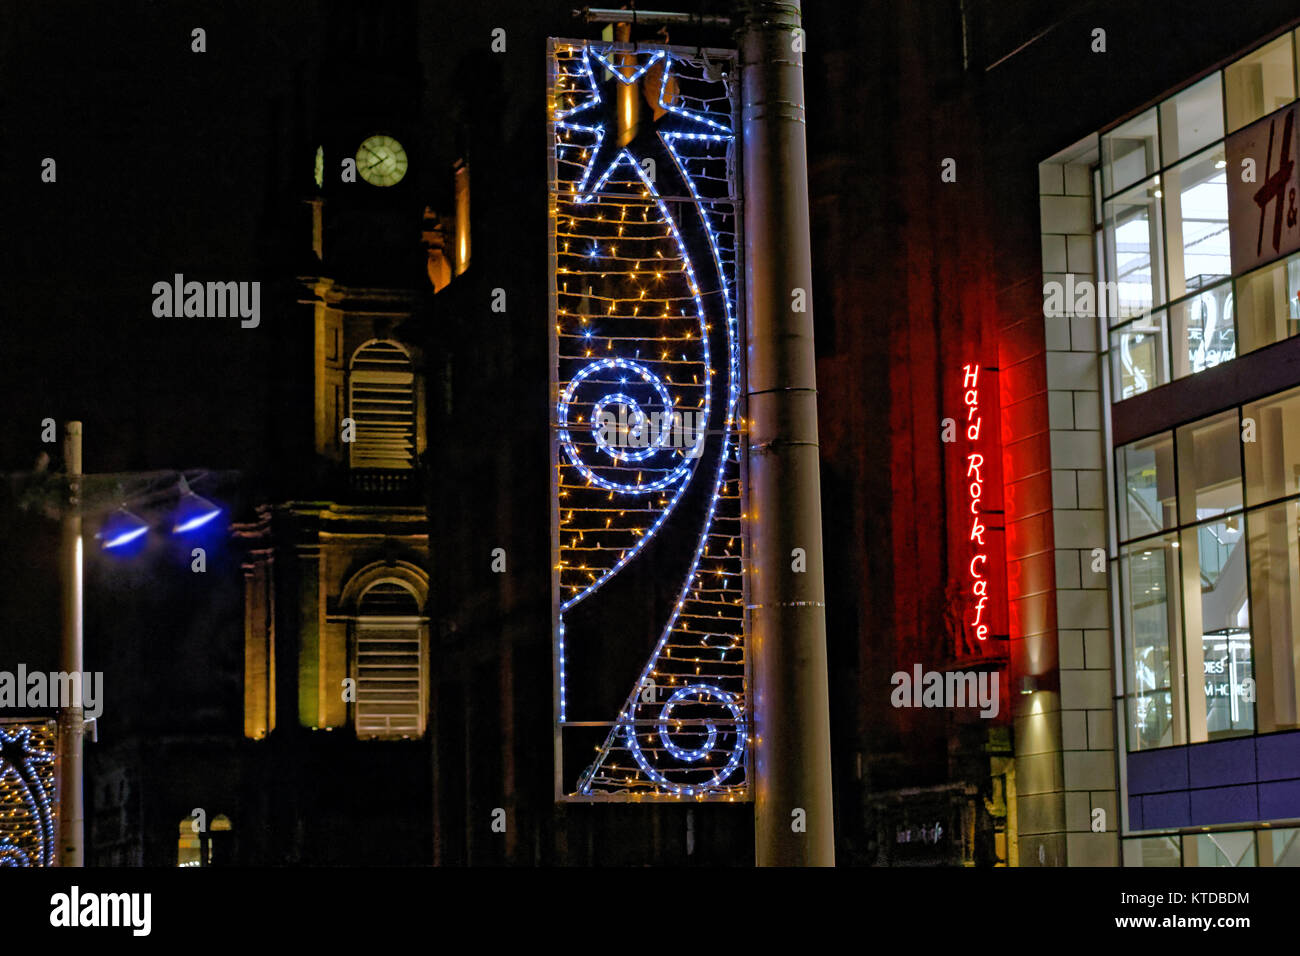 Hard rock cafe insegna al neon Glasgow la vigilia di Natale Capodanno hogmanay notte decorazioni su strada la notte Foto Stock